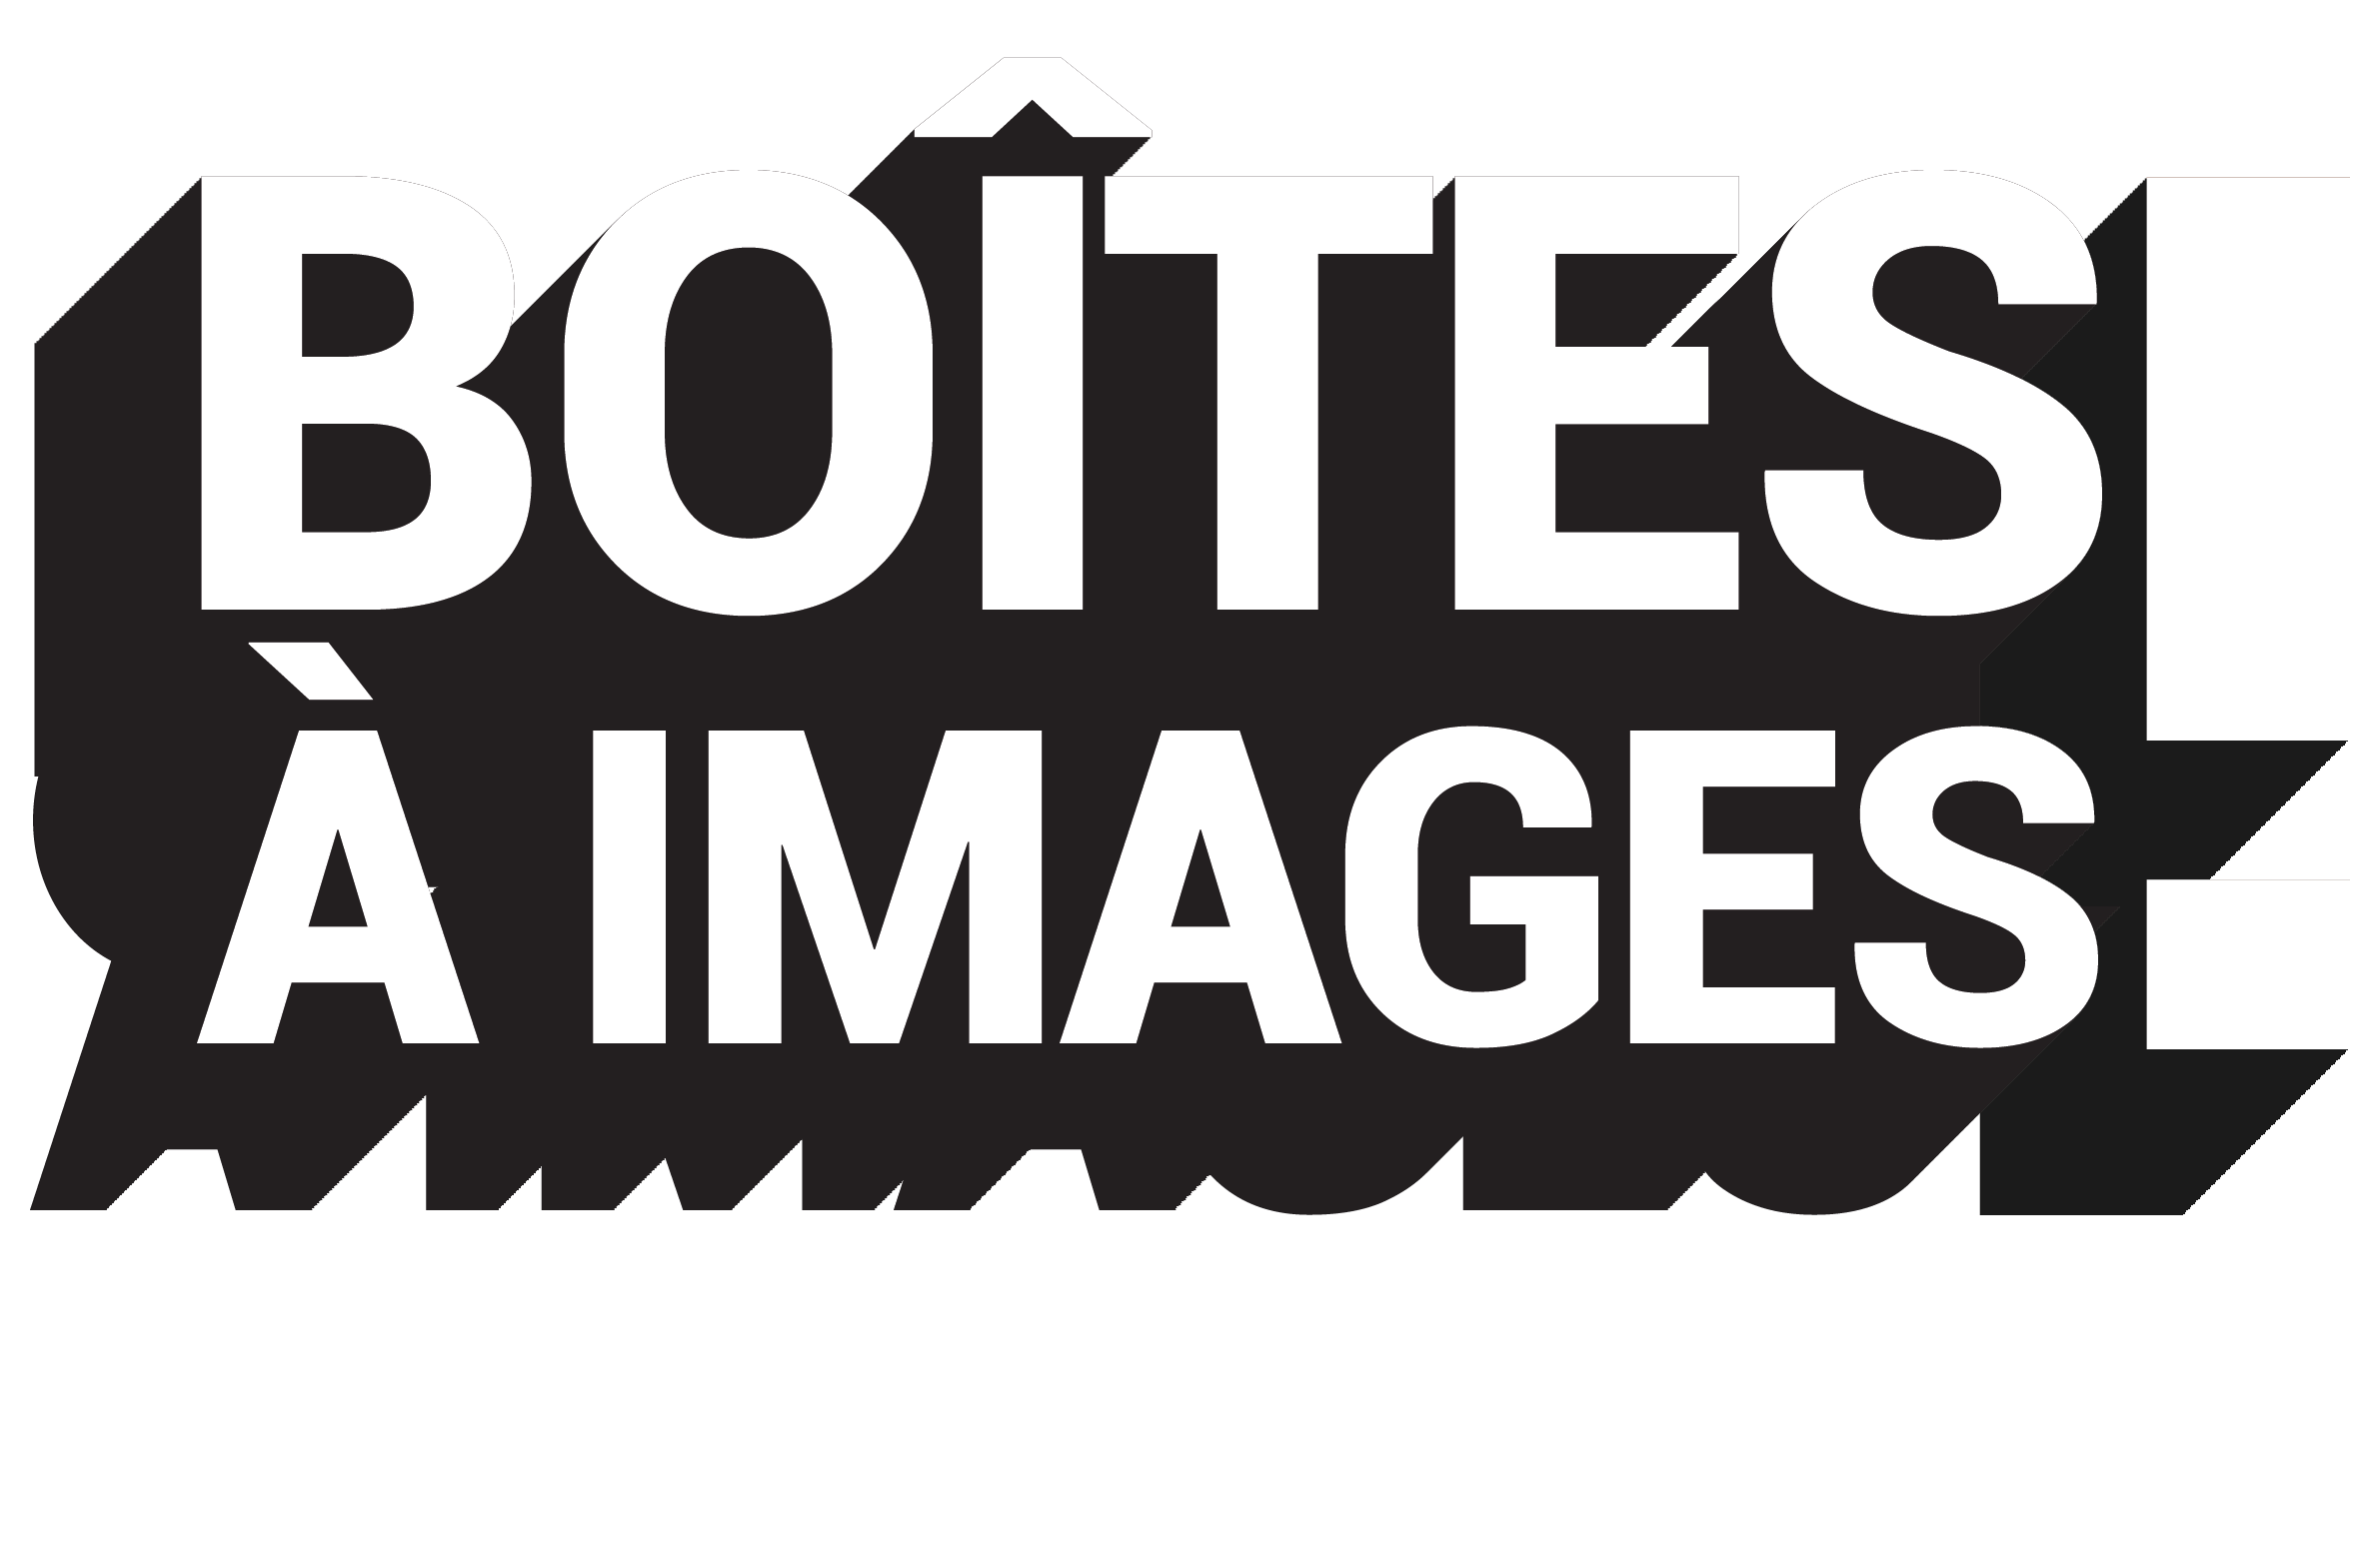 BOITES A IMAGES